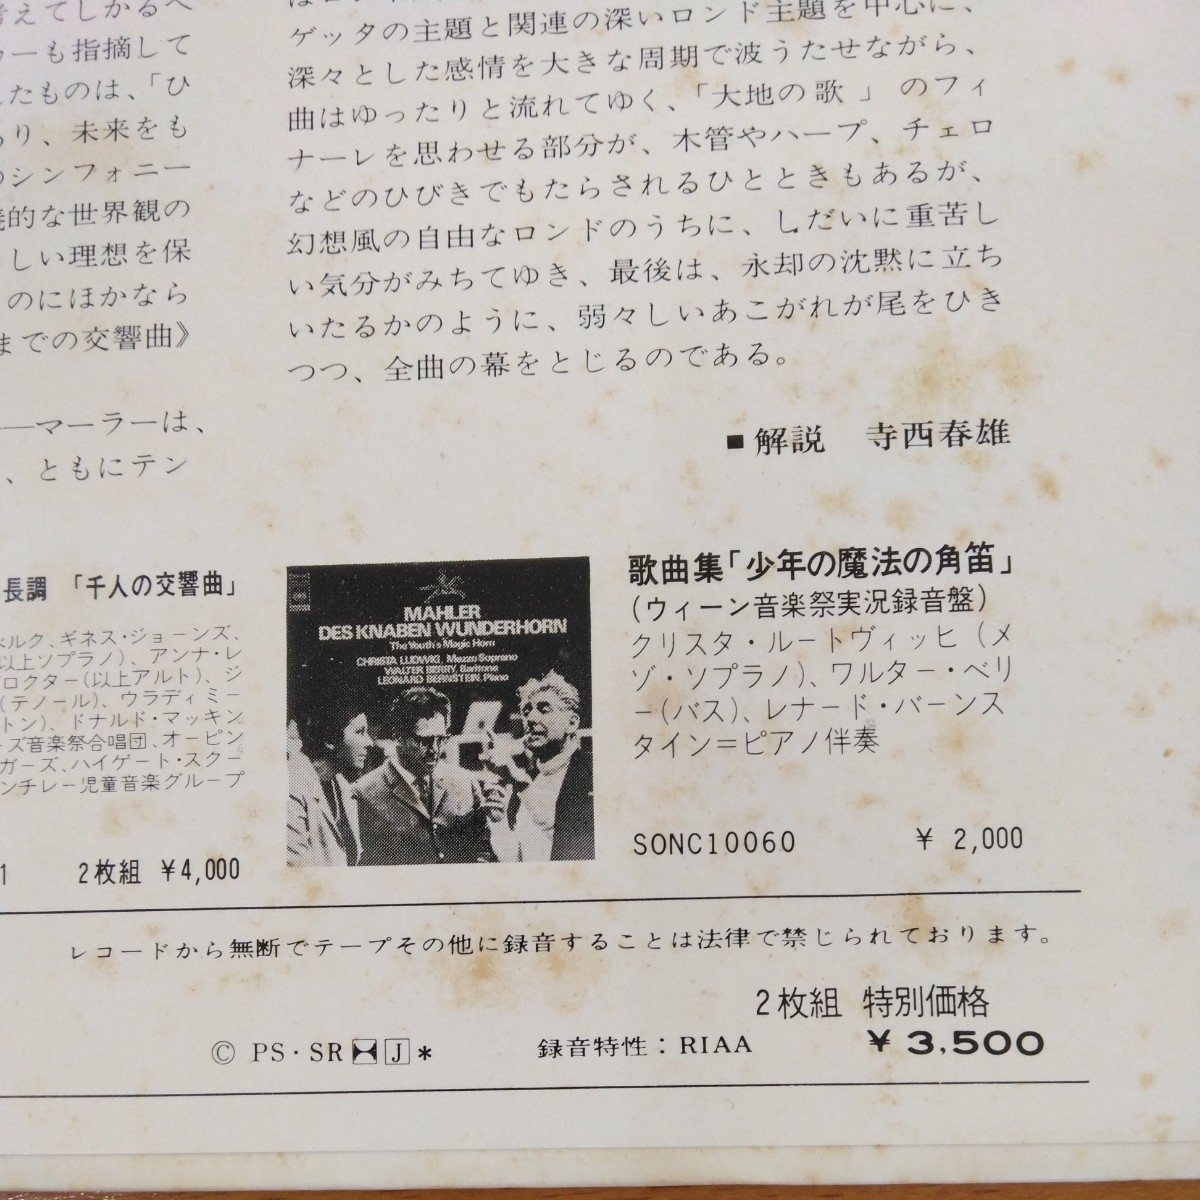 マーラー交響曲第9番 レナード バーンスタイン指揮 LPレコード2枚組の画像6